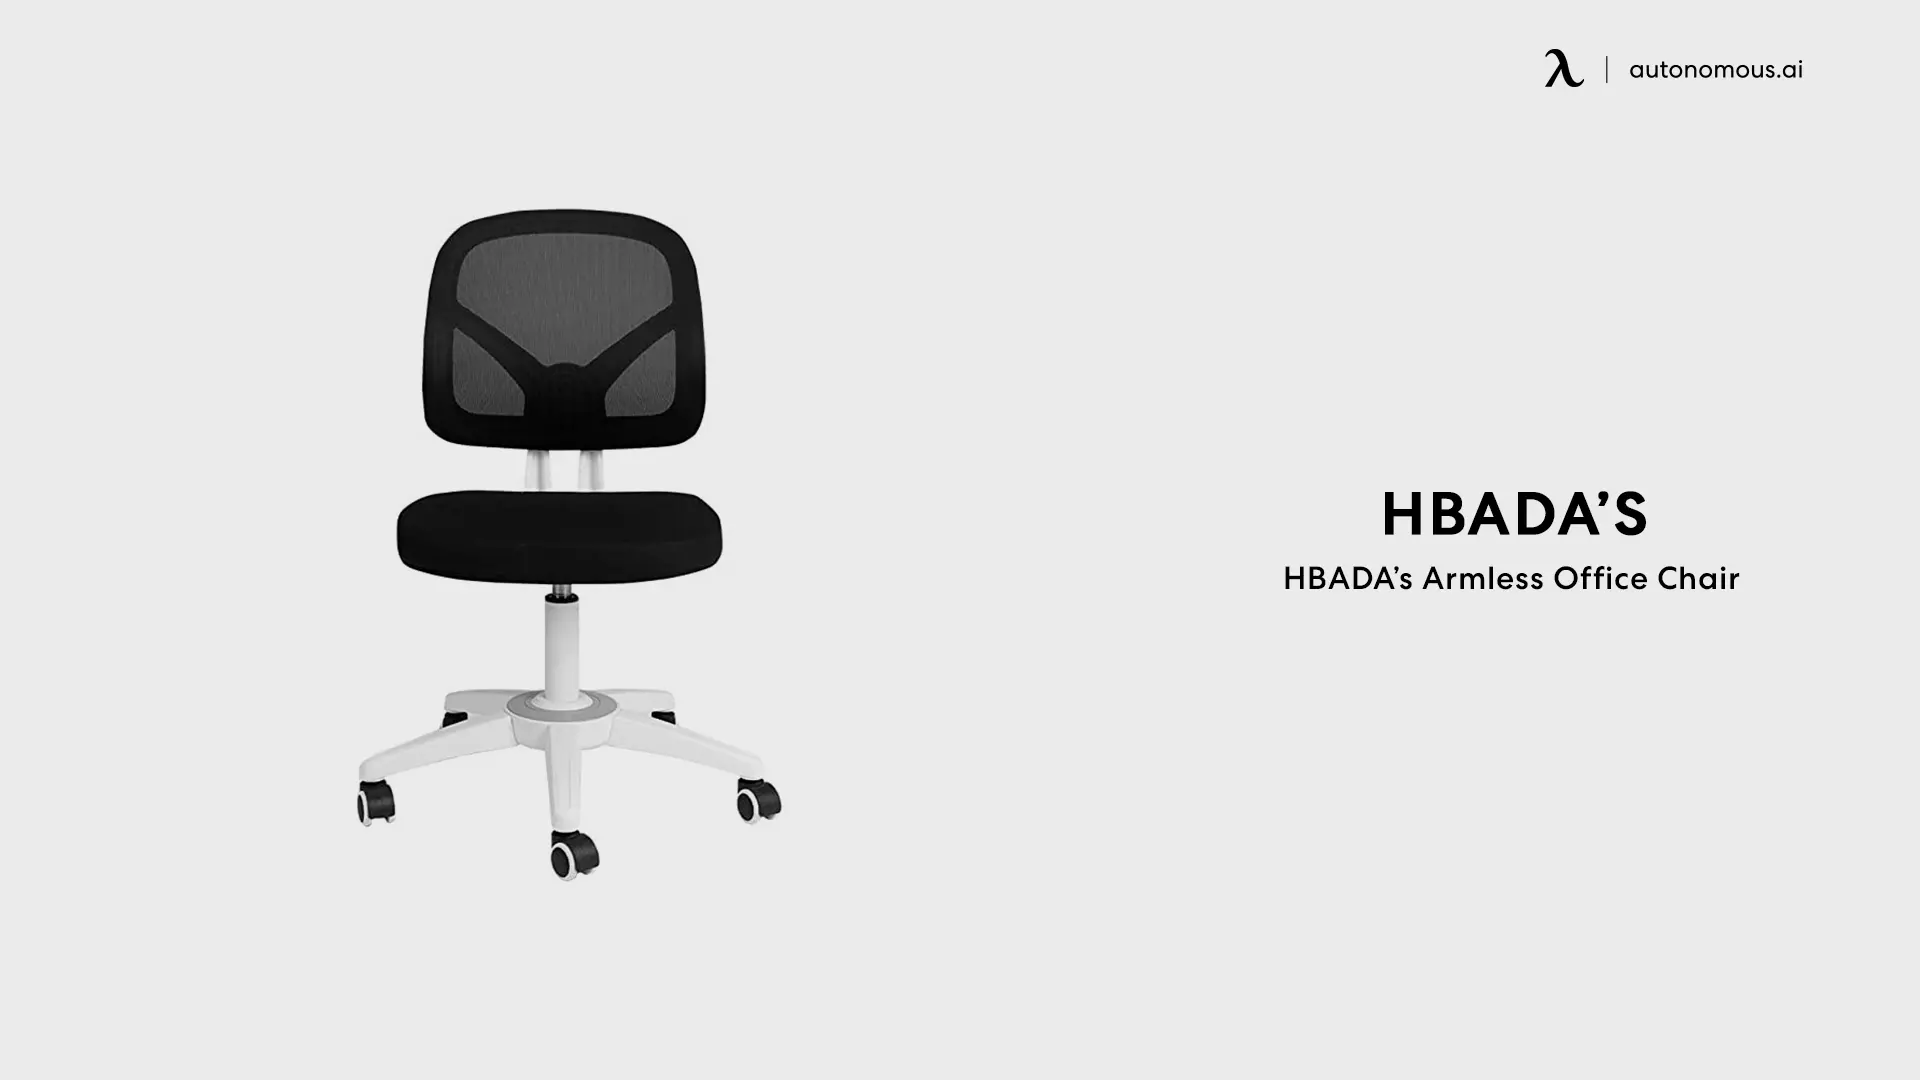 HBADA’s Armless Office Chair